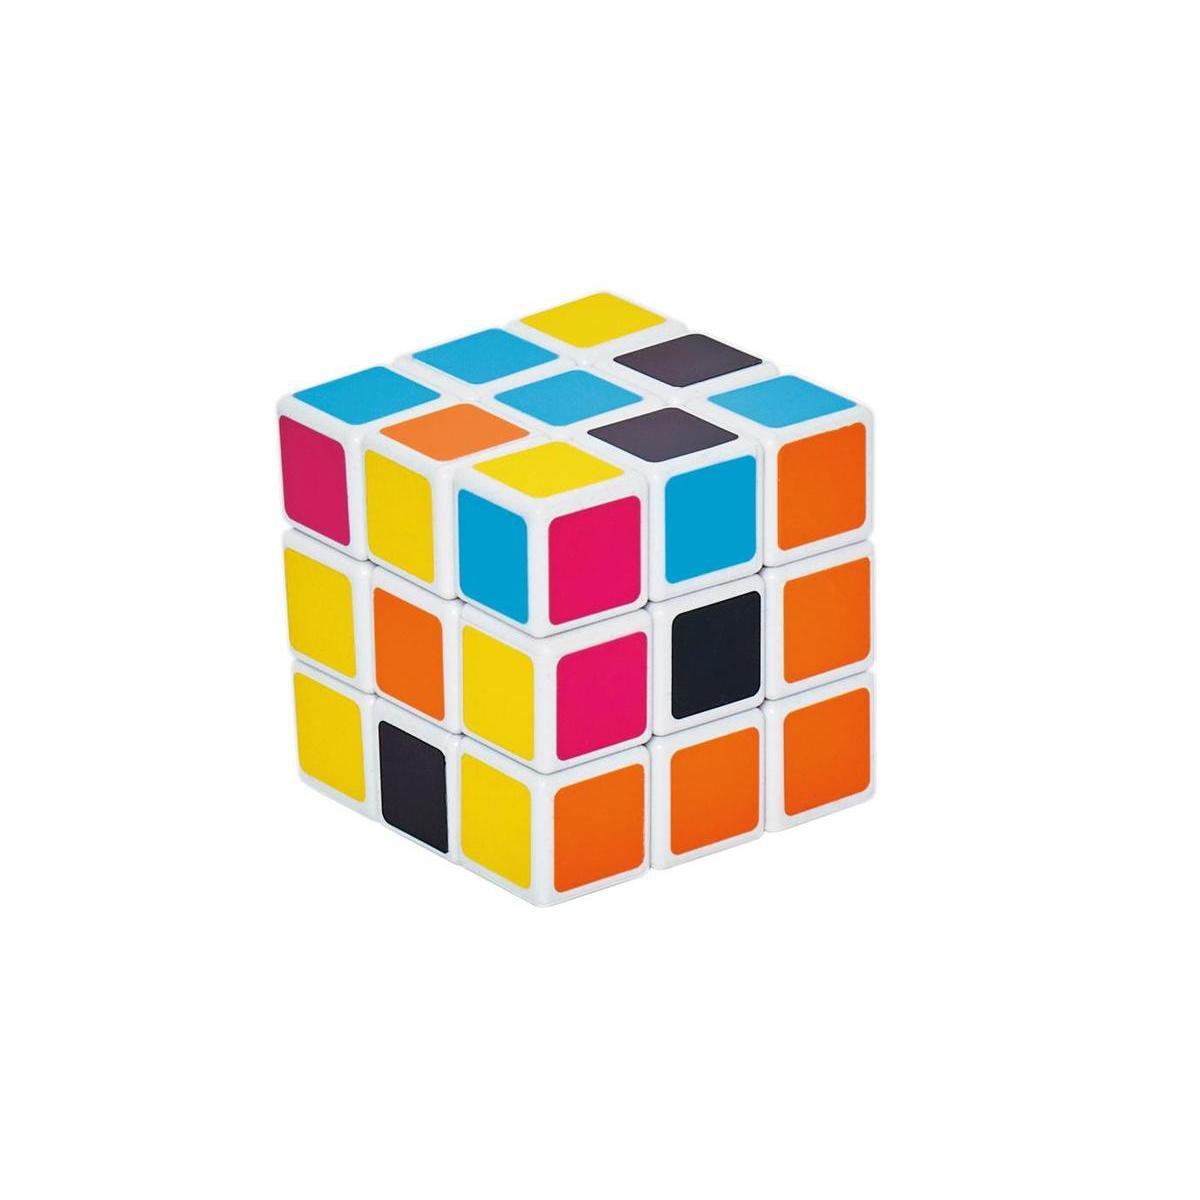 Cube magique - 5.5 x 5.5 x H 5.5 cm